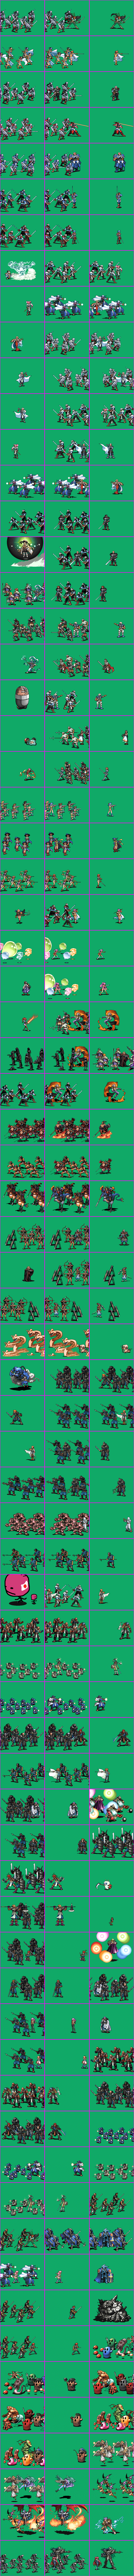 Kichikuo Rance - Battle Units (1/2)